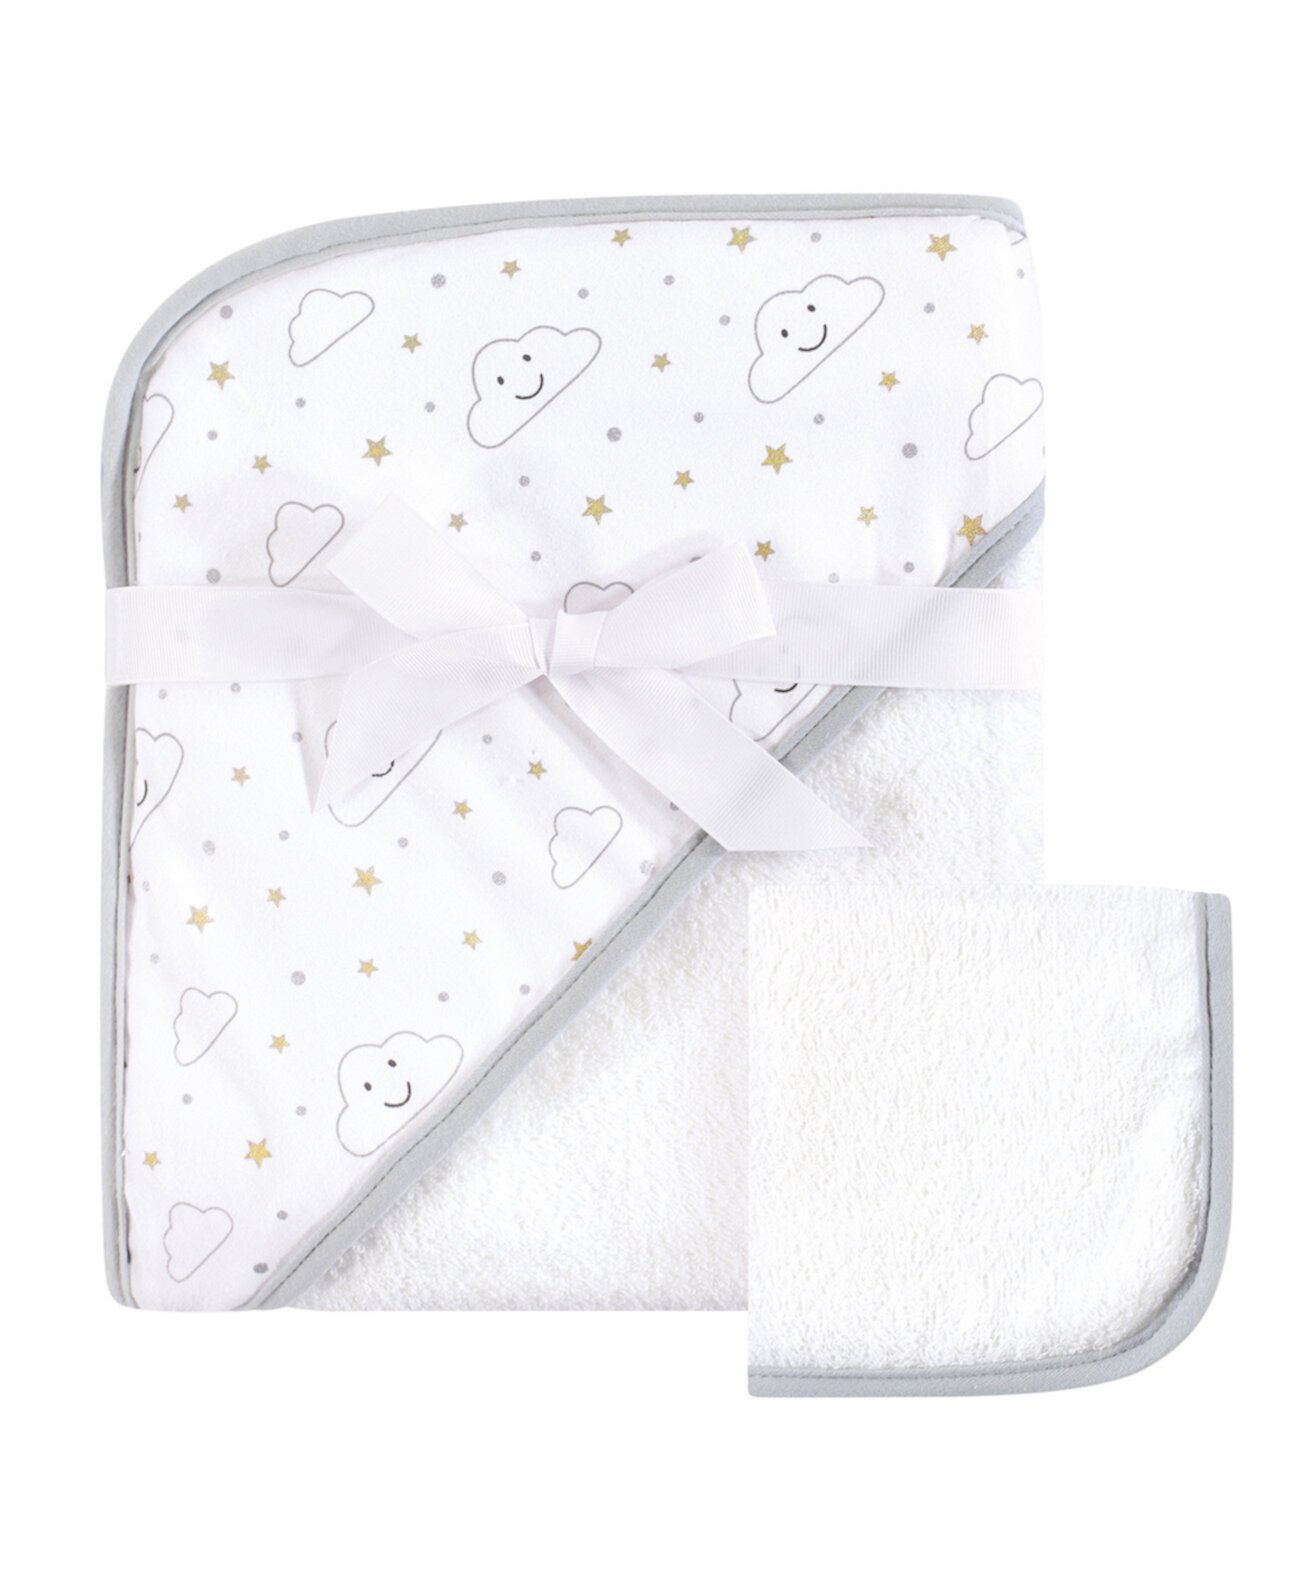 Hudson Baby унисекс детское полотенце с капюшоном и мочалка, набор из 2 предметов Grey Cloud, один размер Baby Vision